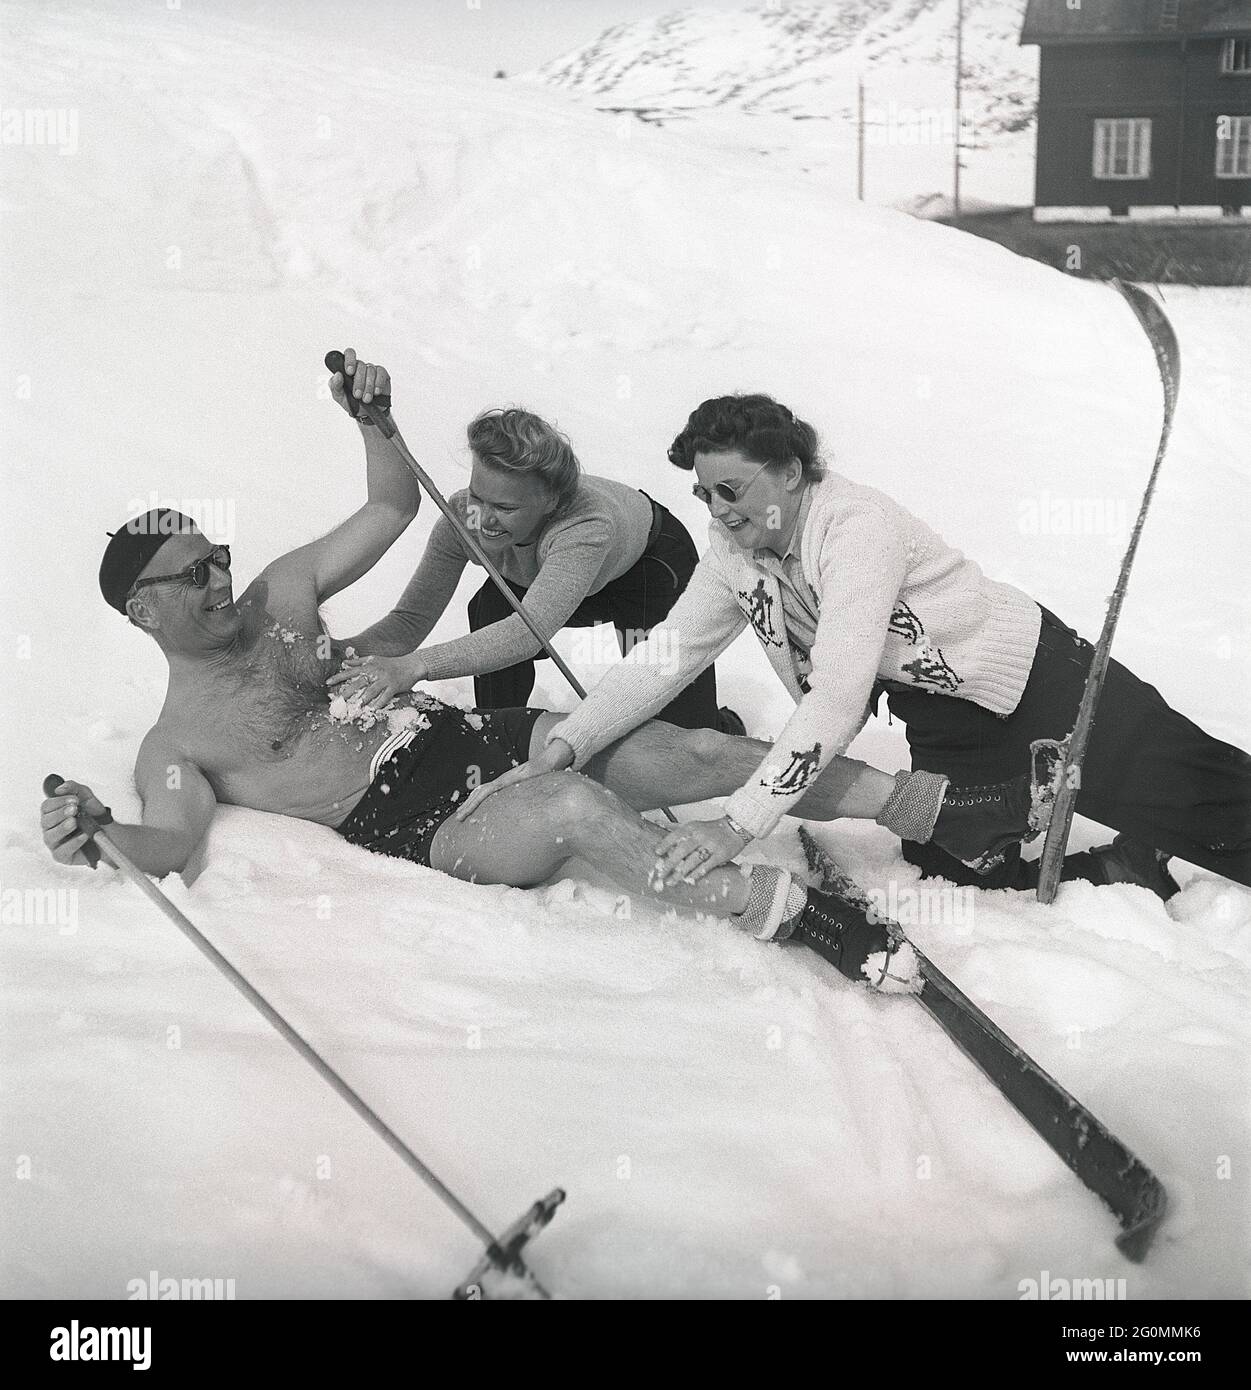 Winter in den 1940er Jahren. Der Frühling in den verschneiten schwedischen Bergen kann warm und sonnig sein, deshalb trägt er Badehosen. Er scheint auch etwas Abkühlung zu benötigen und bekommt dabei Hilfe von zwei Frauen, die ihn mit Schnee reiben. Alles hat Spaß gemacht. Schweden 1944 Ref. K9-6 Stockfoto